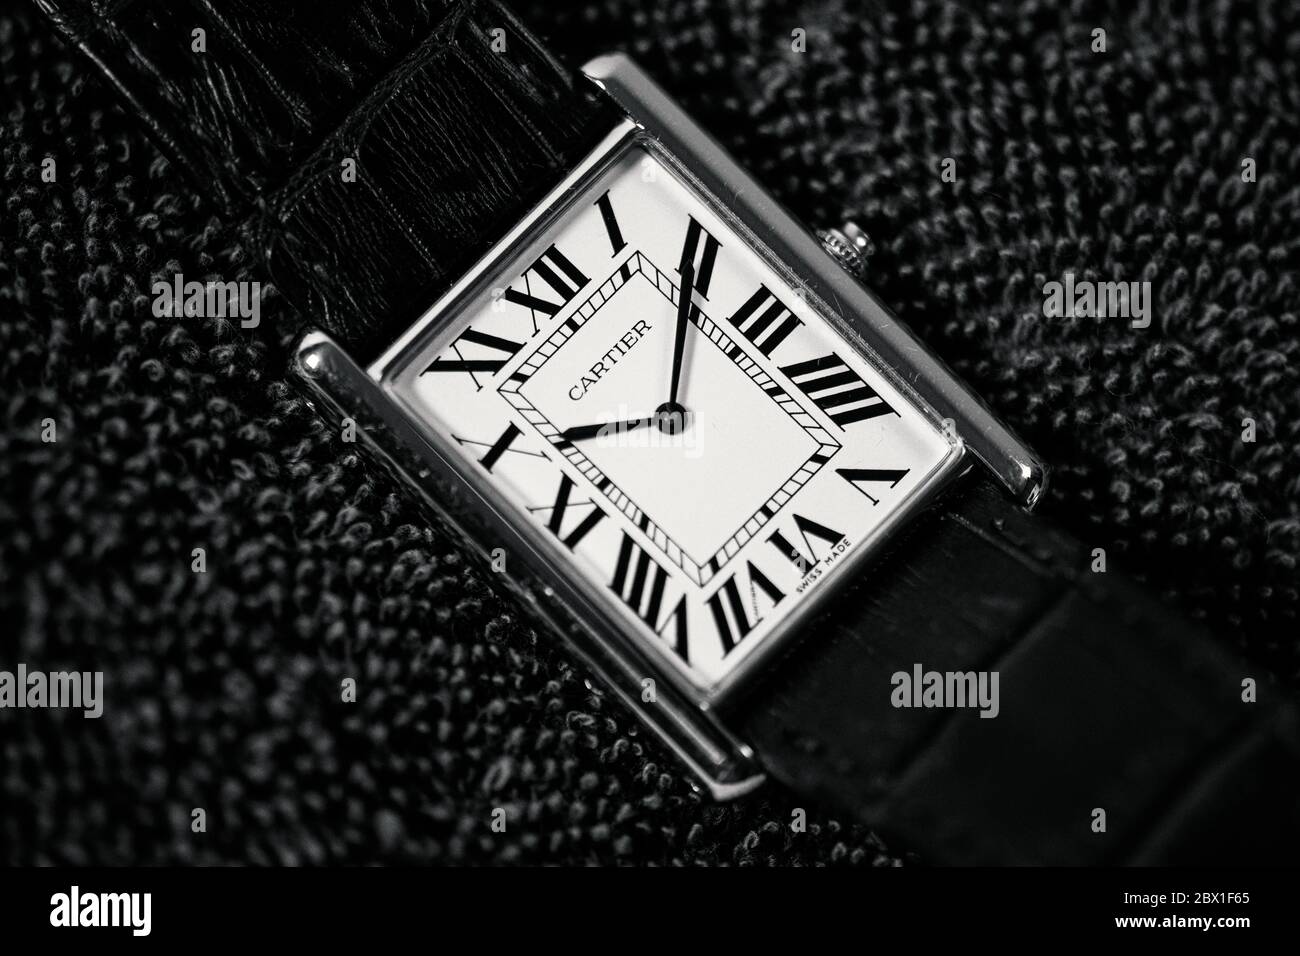 Cartier Tank Watch Monochrome Stock Photo Alamy